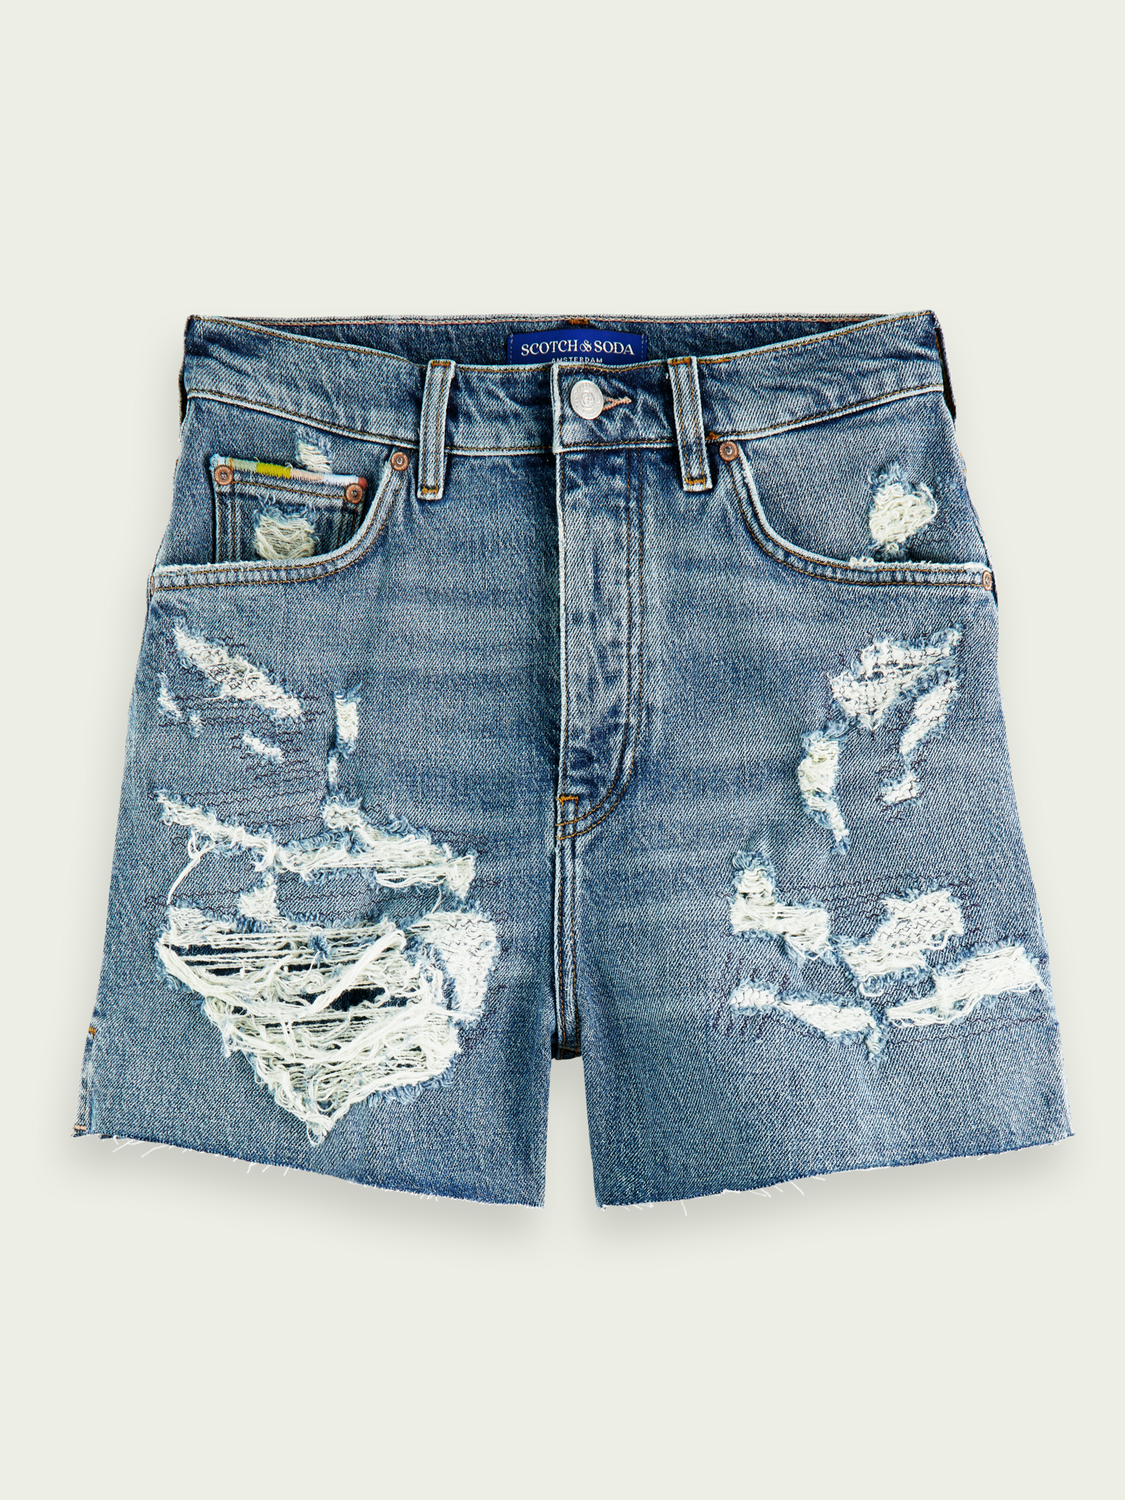 The denim shorts, ocean – No8